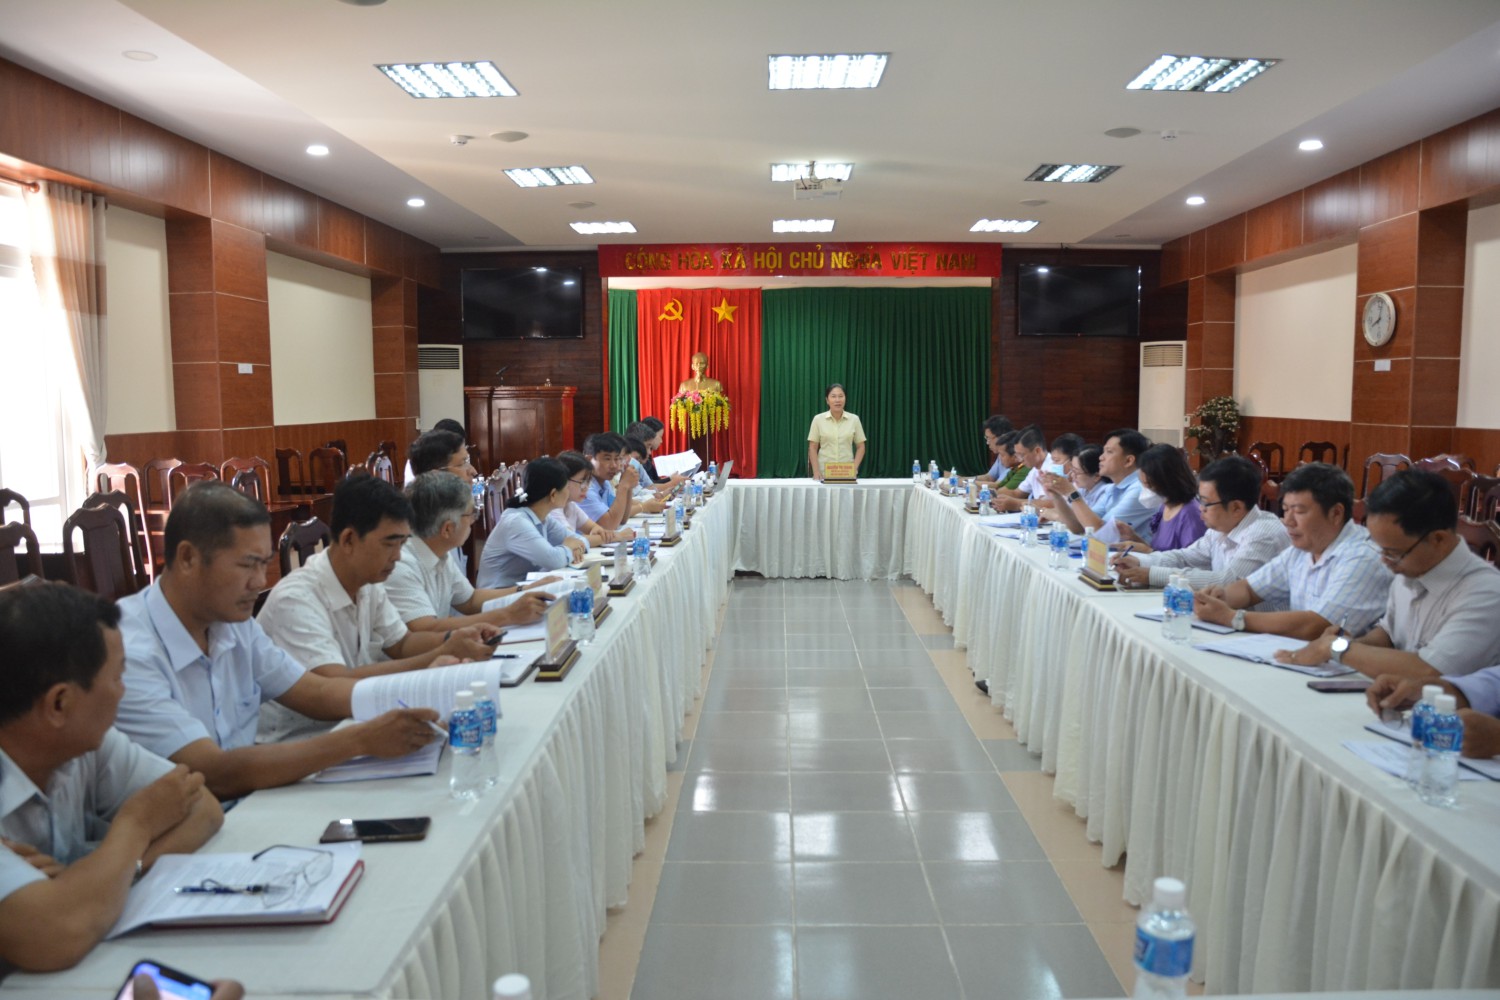 UBND huyện Tân Châu tổ chức hội nghị chuyên đề về  kết quả thực hiện Kế hoạch khắc phục hạn chế, khuyết điểm  trong thực hiện kế hoạch phát triển kinh tế - xã hội